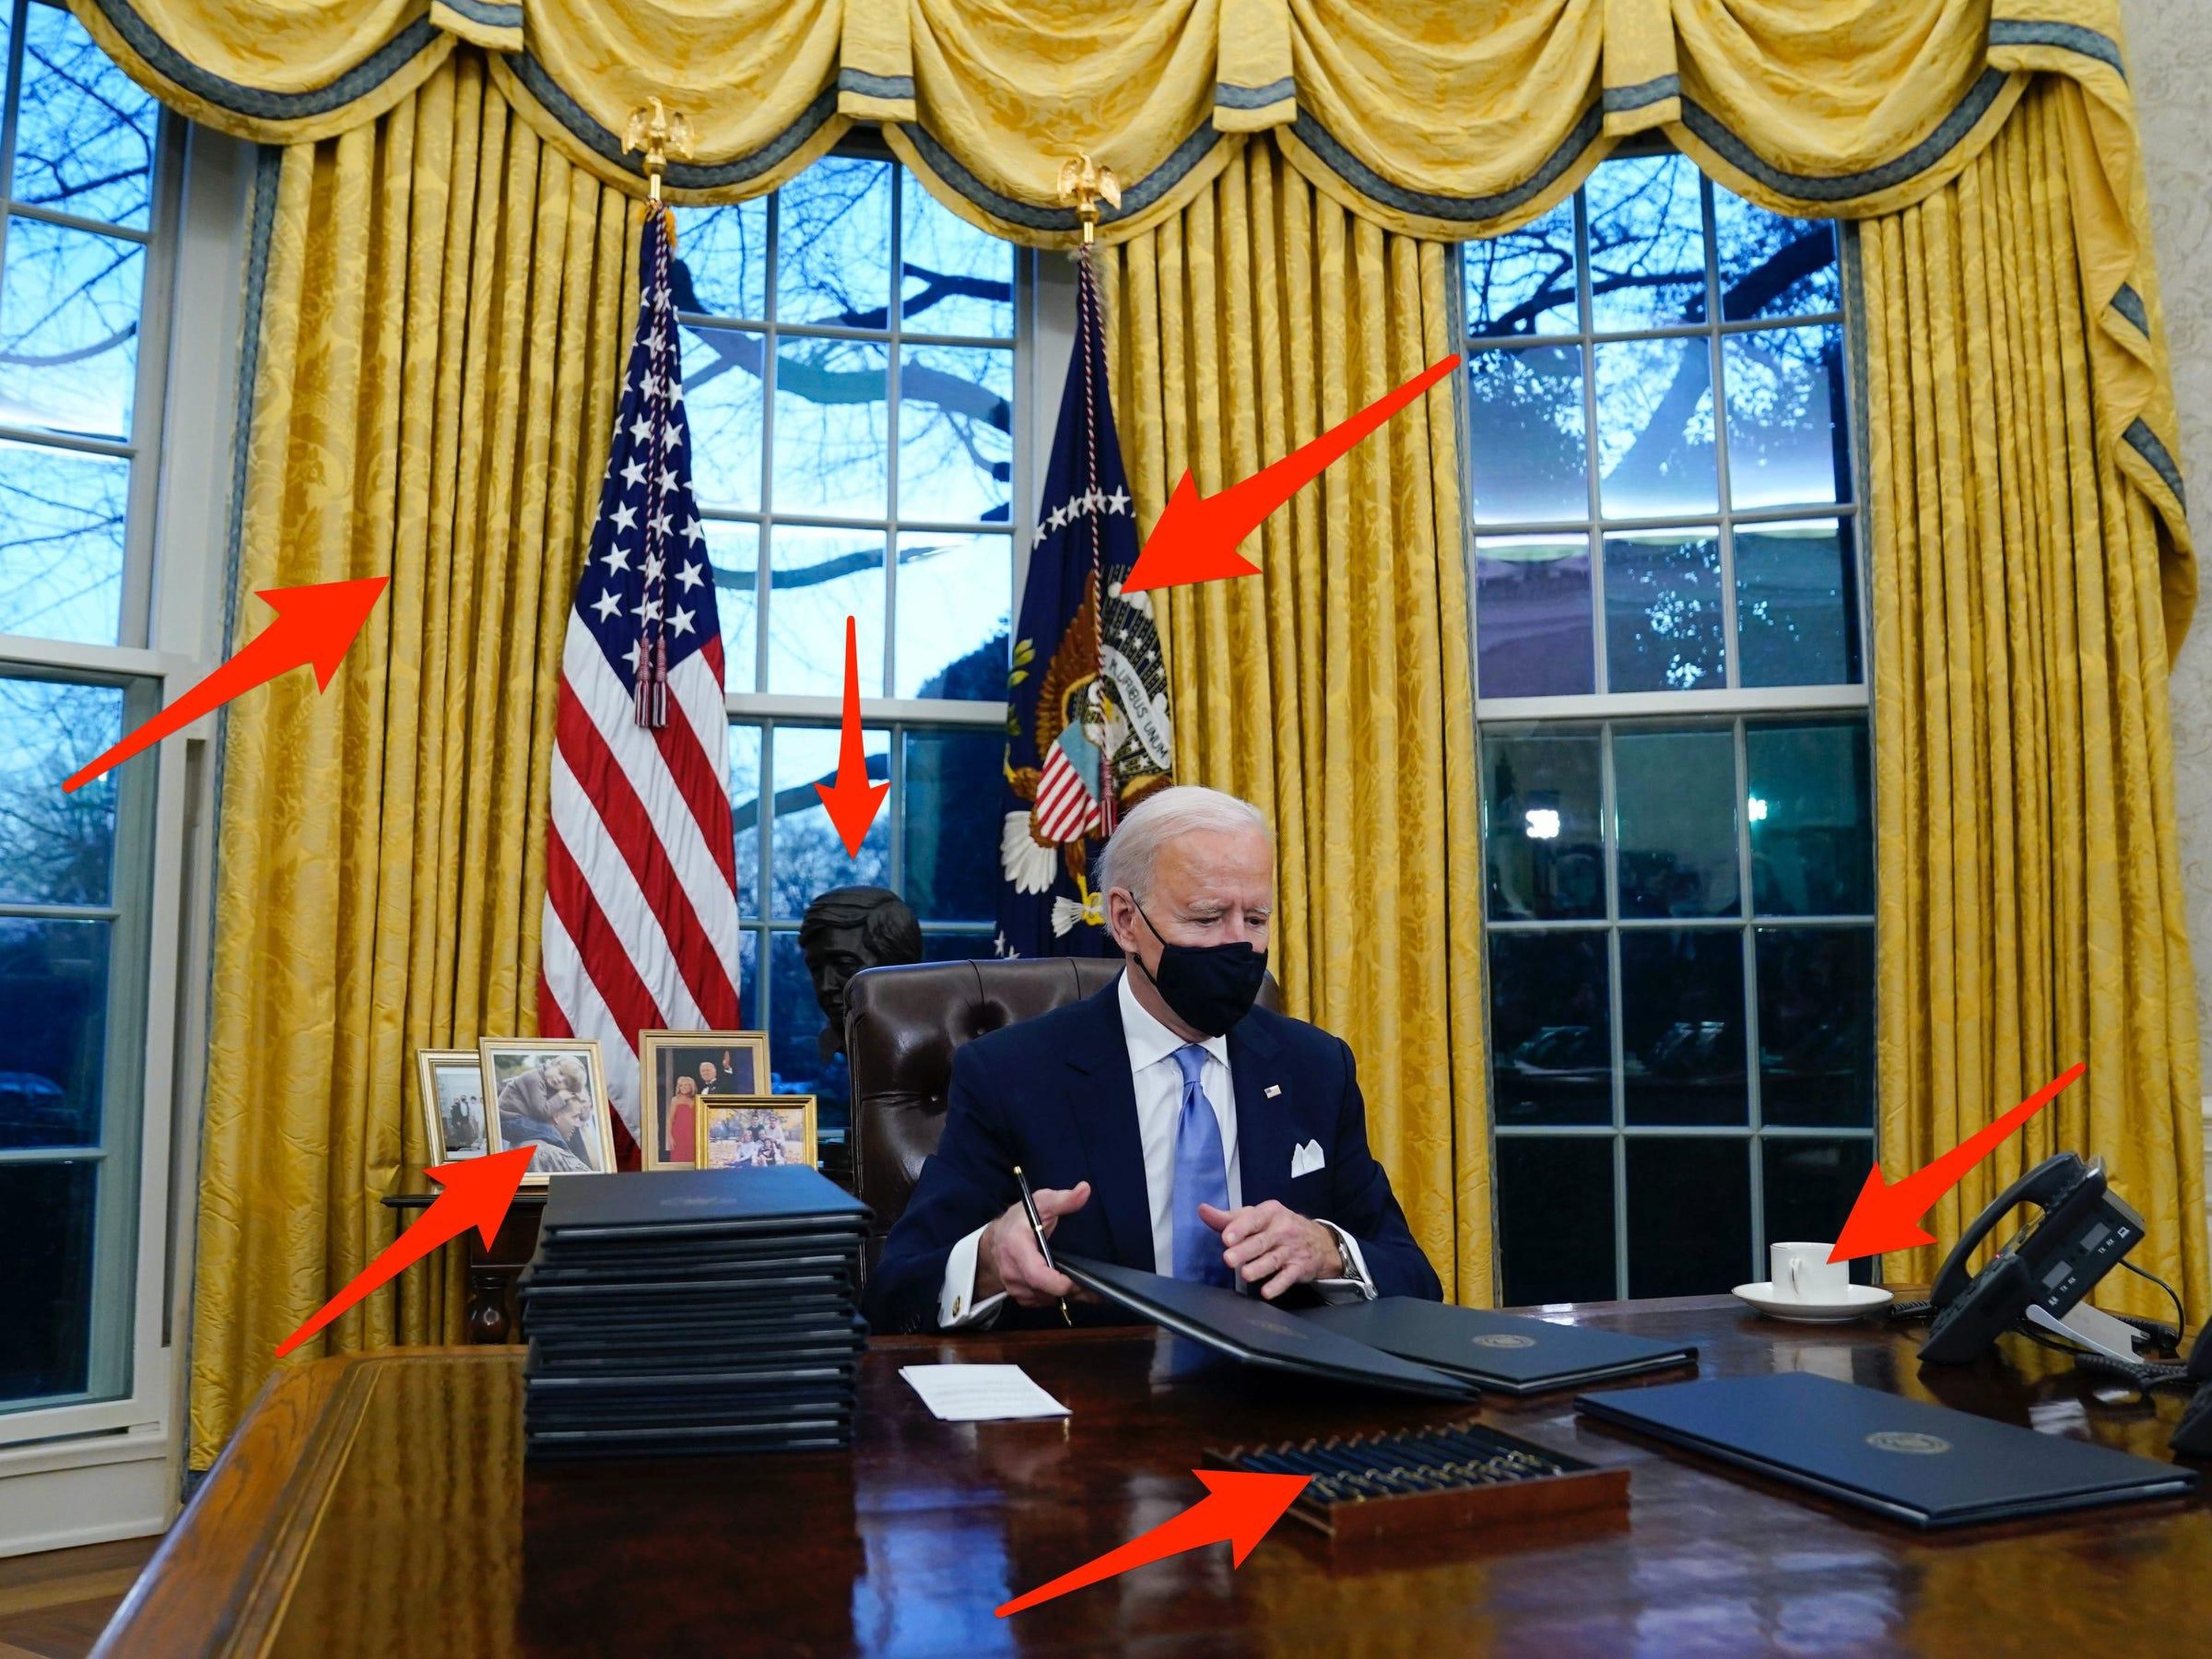 El presidente Joe Biden ha realizado algunos cambios de estilo en el despacho oval.